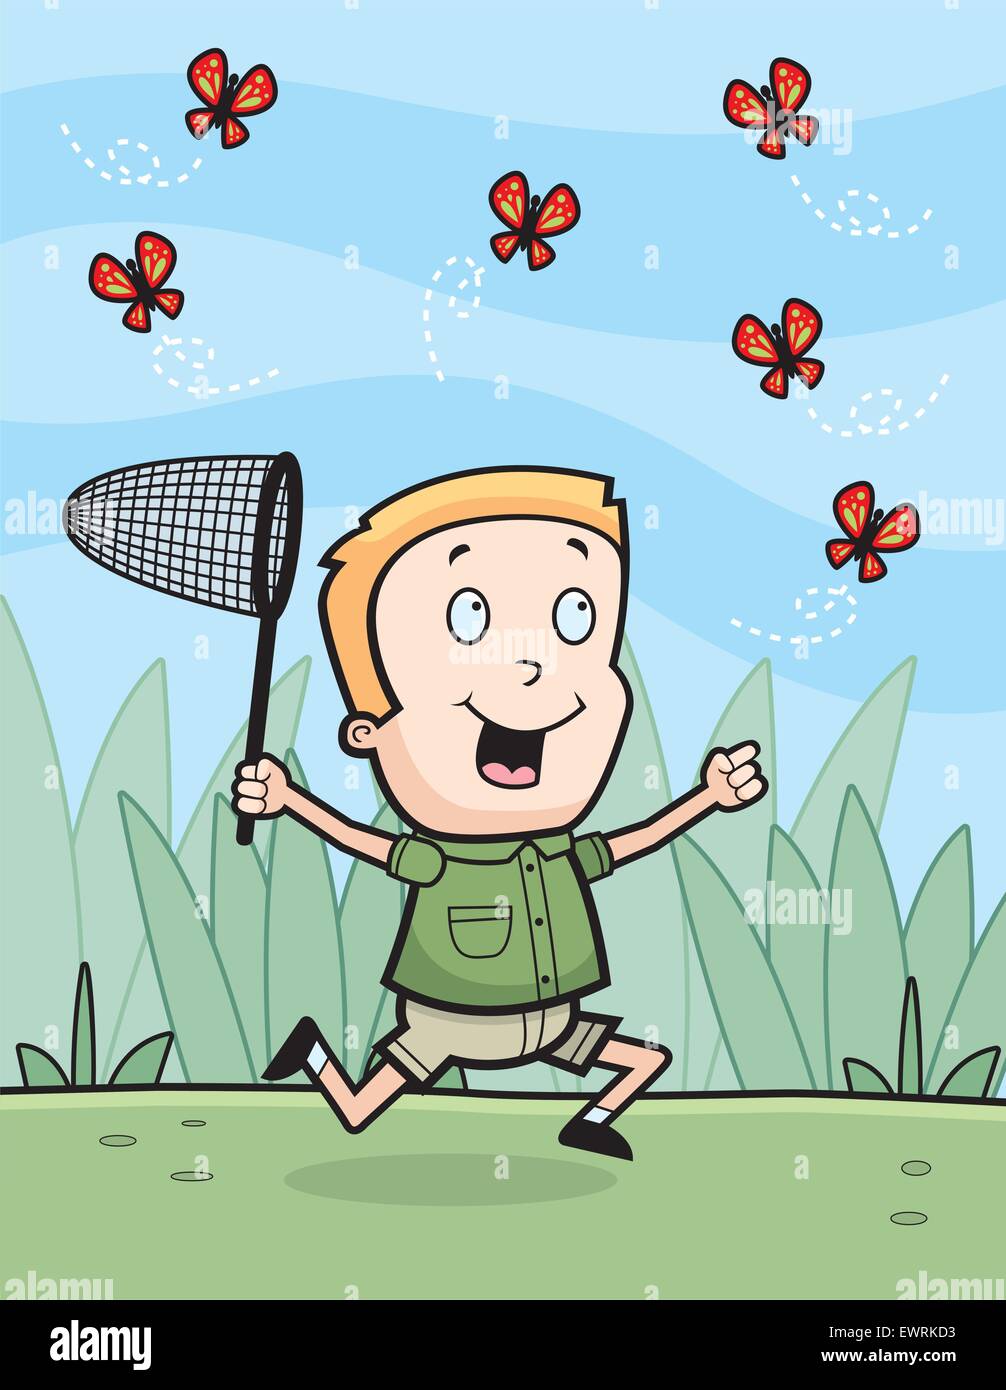 Un felice cartoon boy a caccia di farfalle con un net. Illustrazione Vettoriale